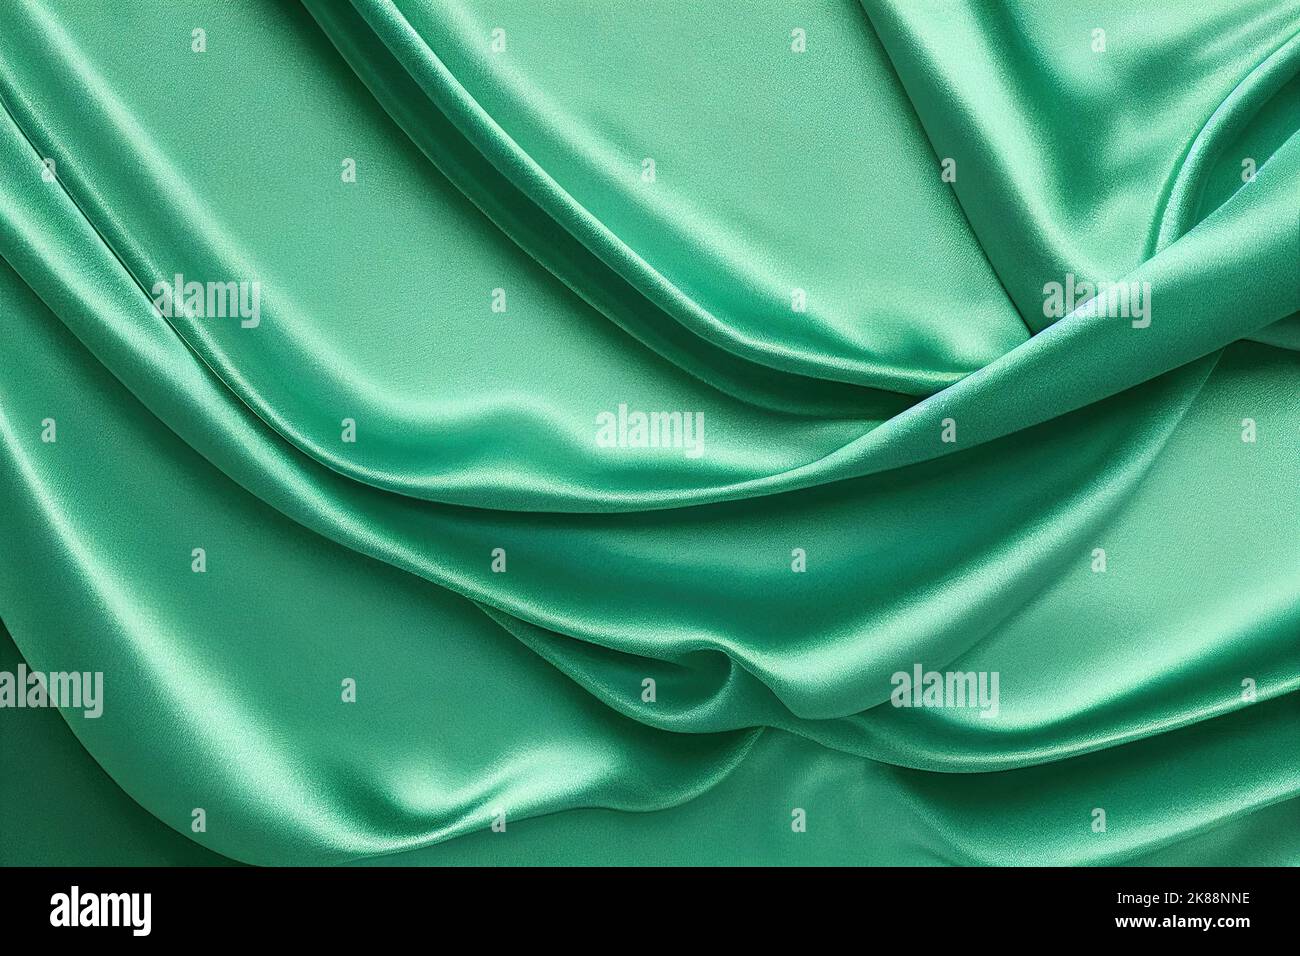 Sfondo satinato verde chiaro. Tessuto di seta alla menta con foldini ondulati tenui tessuto satinato di lusso verde smeraldo chiaro. San Valentino, Natale, anniversario Foto Stock